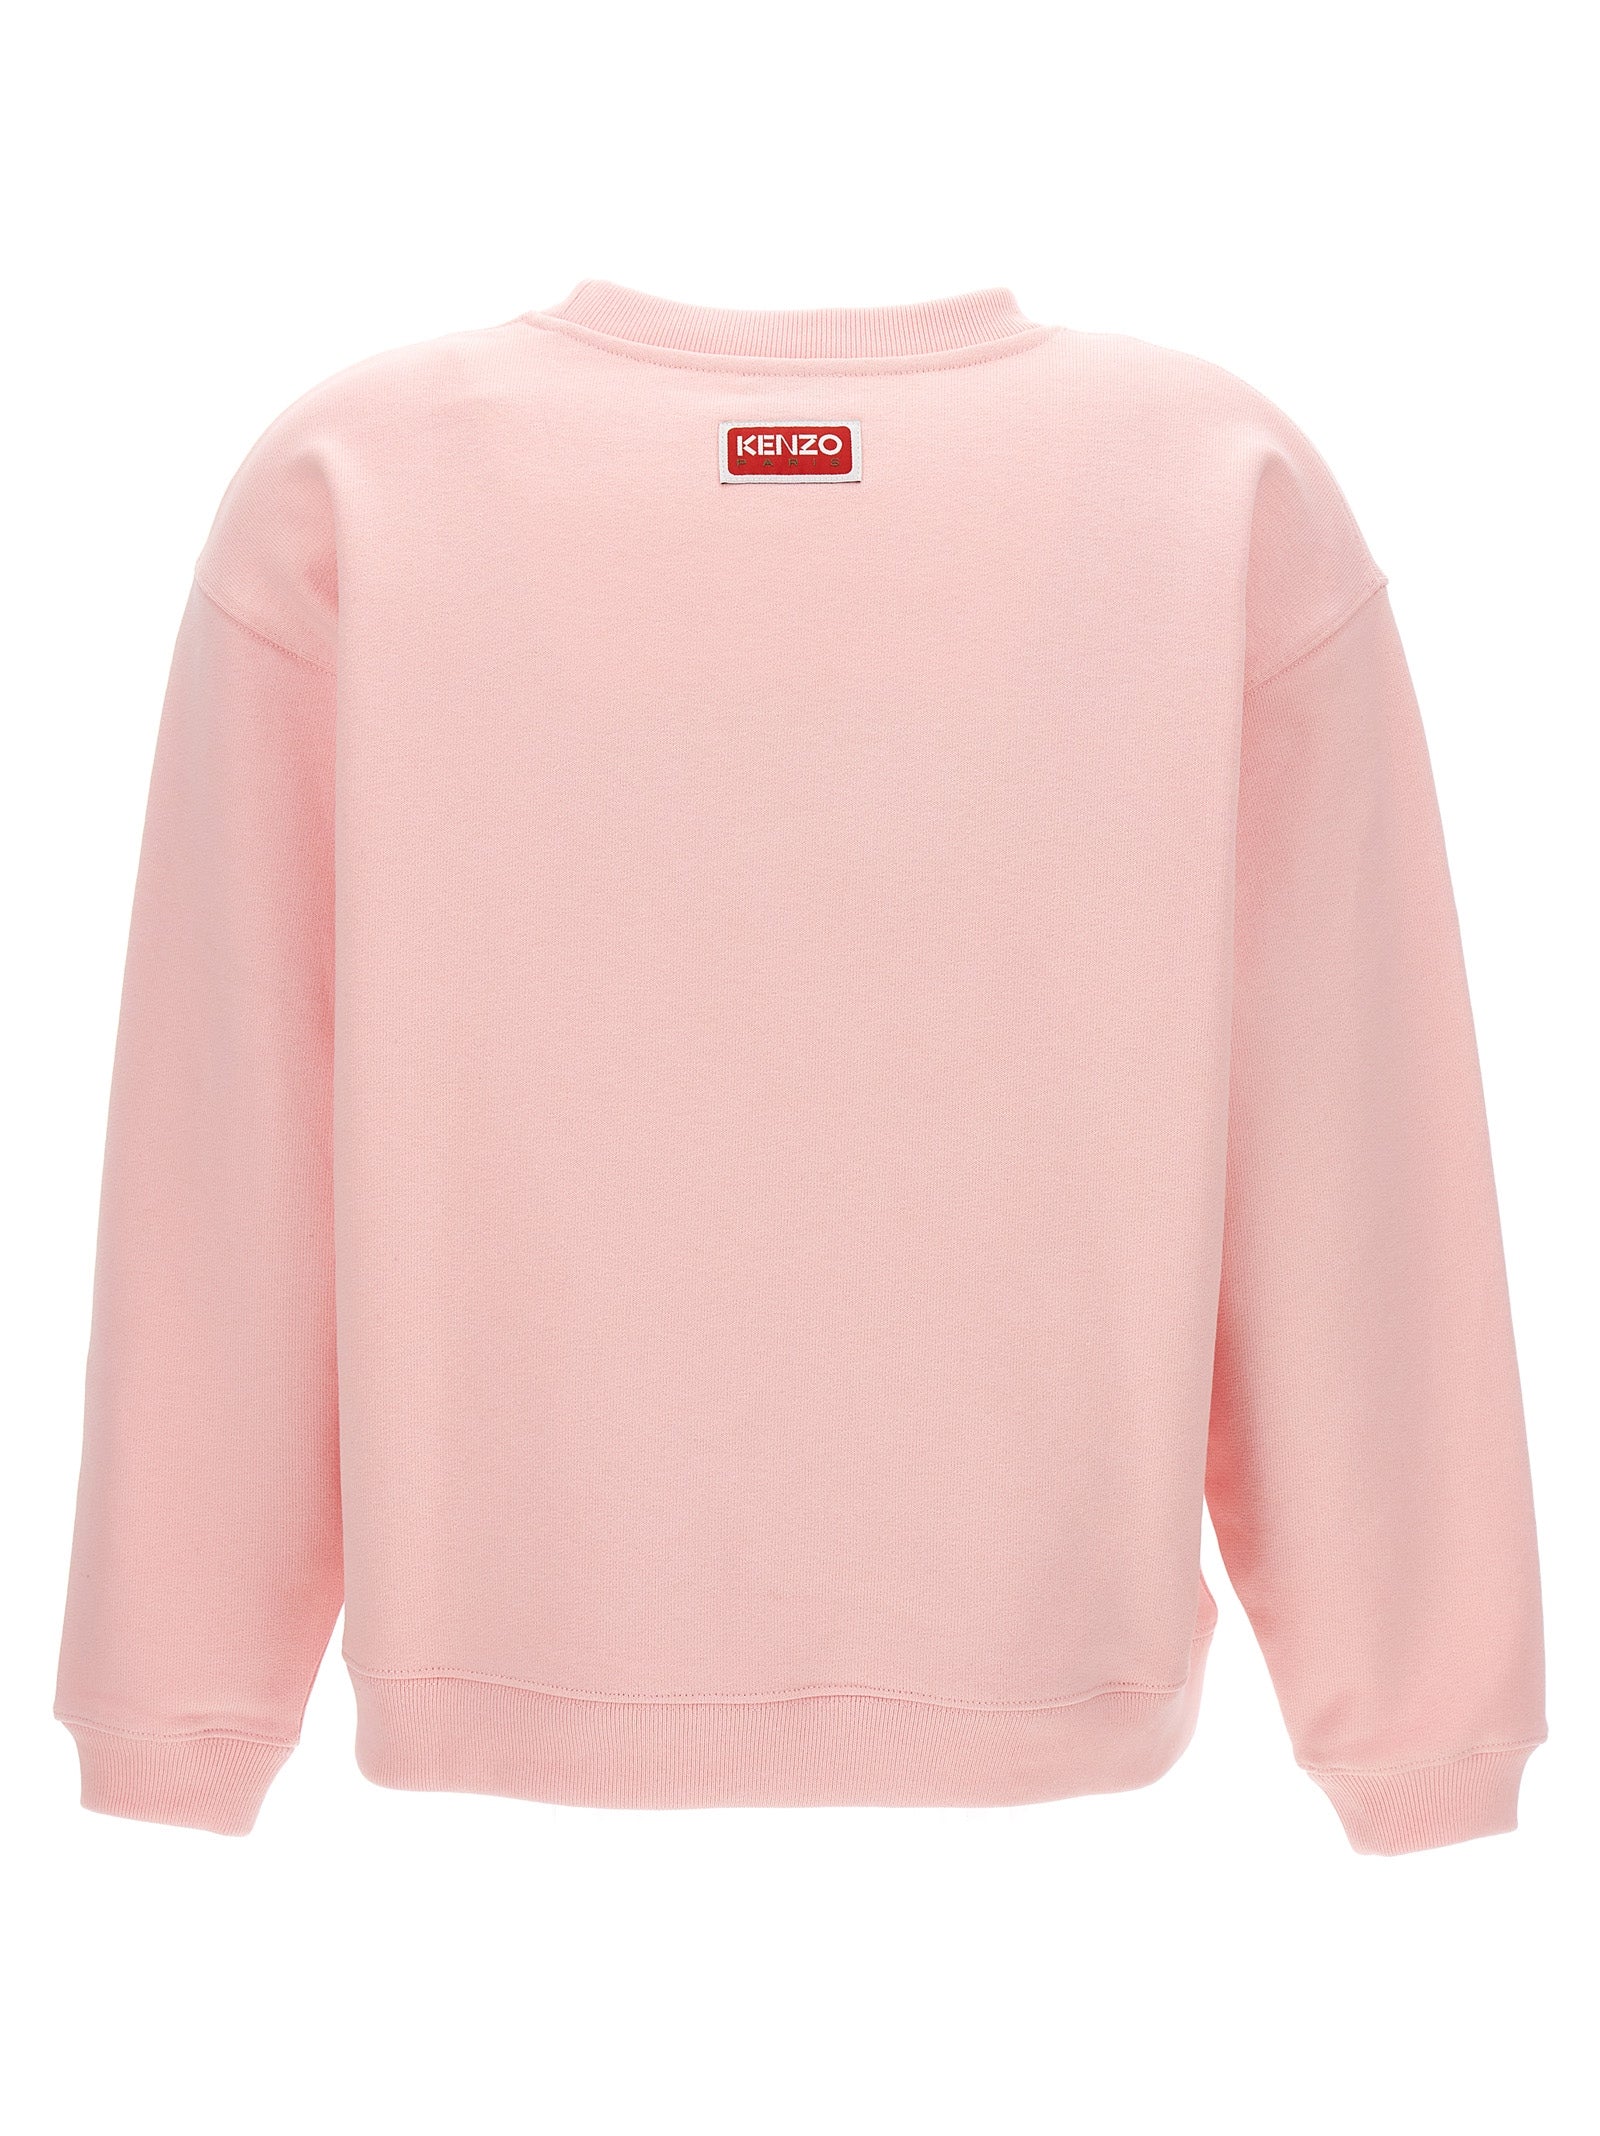 Kenzo Paris Sweatshirt Pink